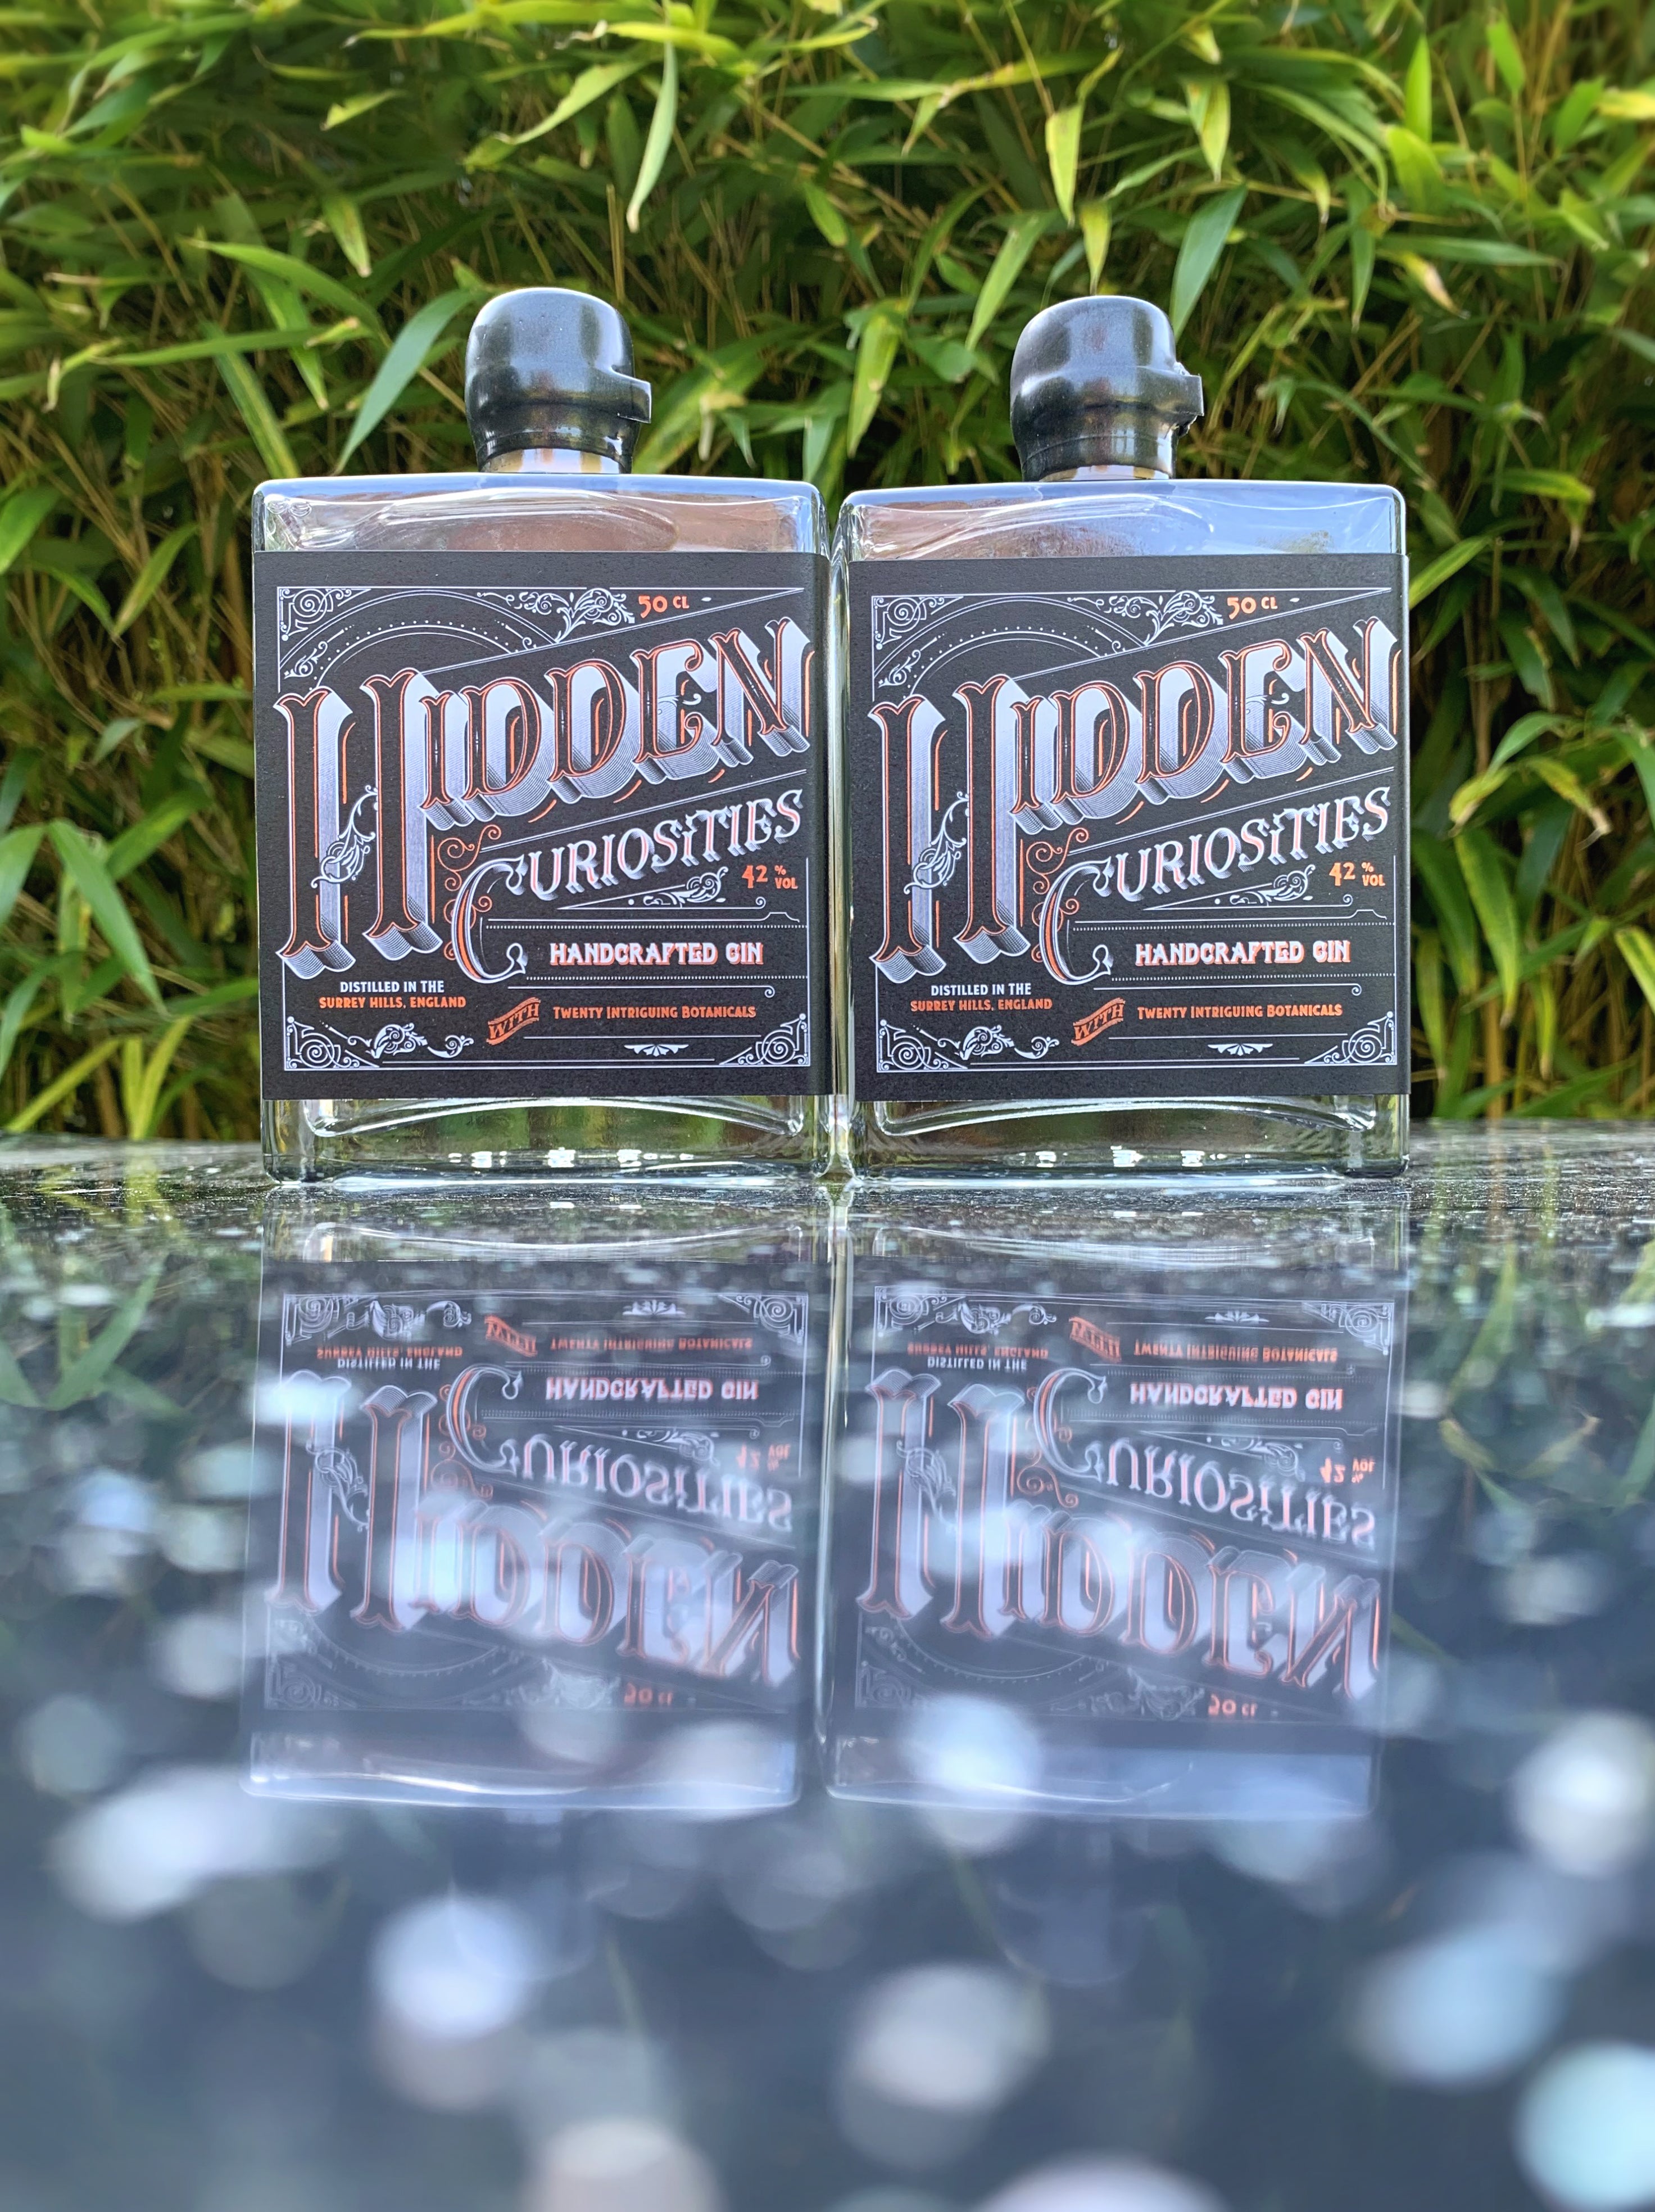 Hidden Curiosities Gin Twin Pack